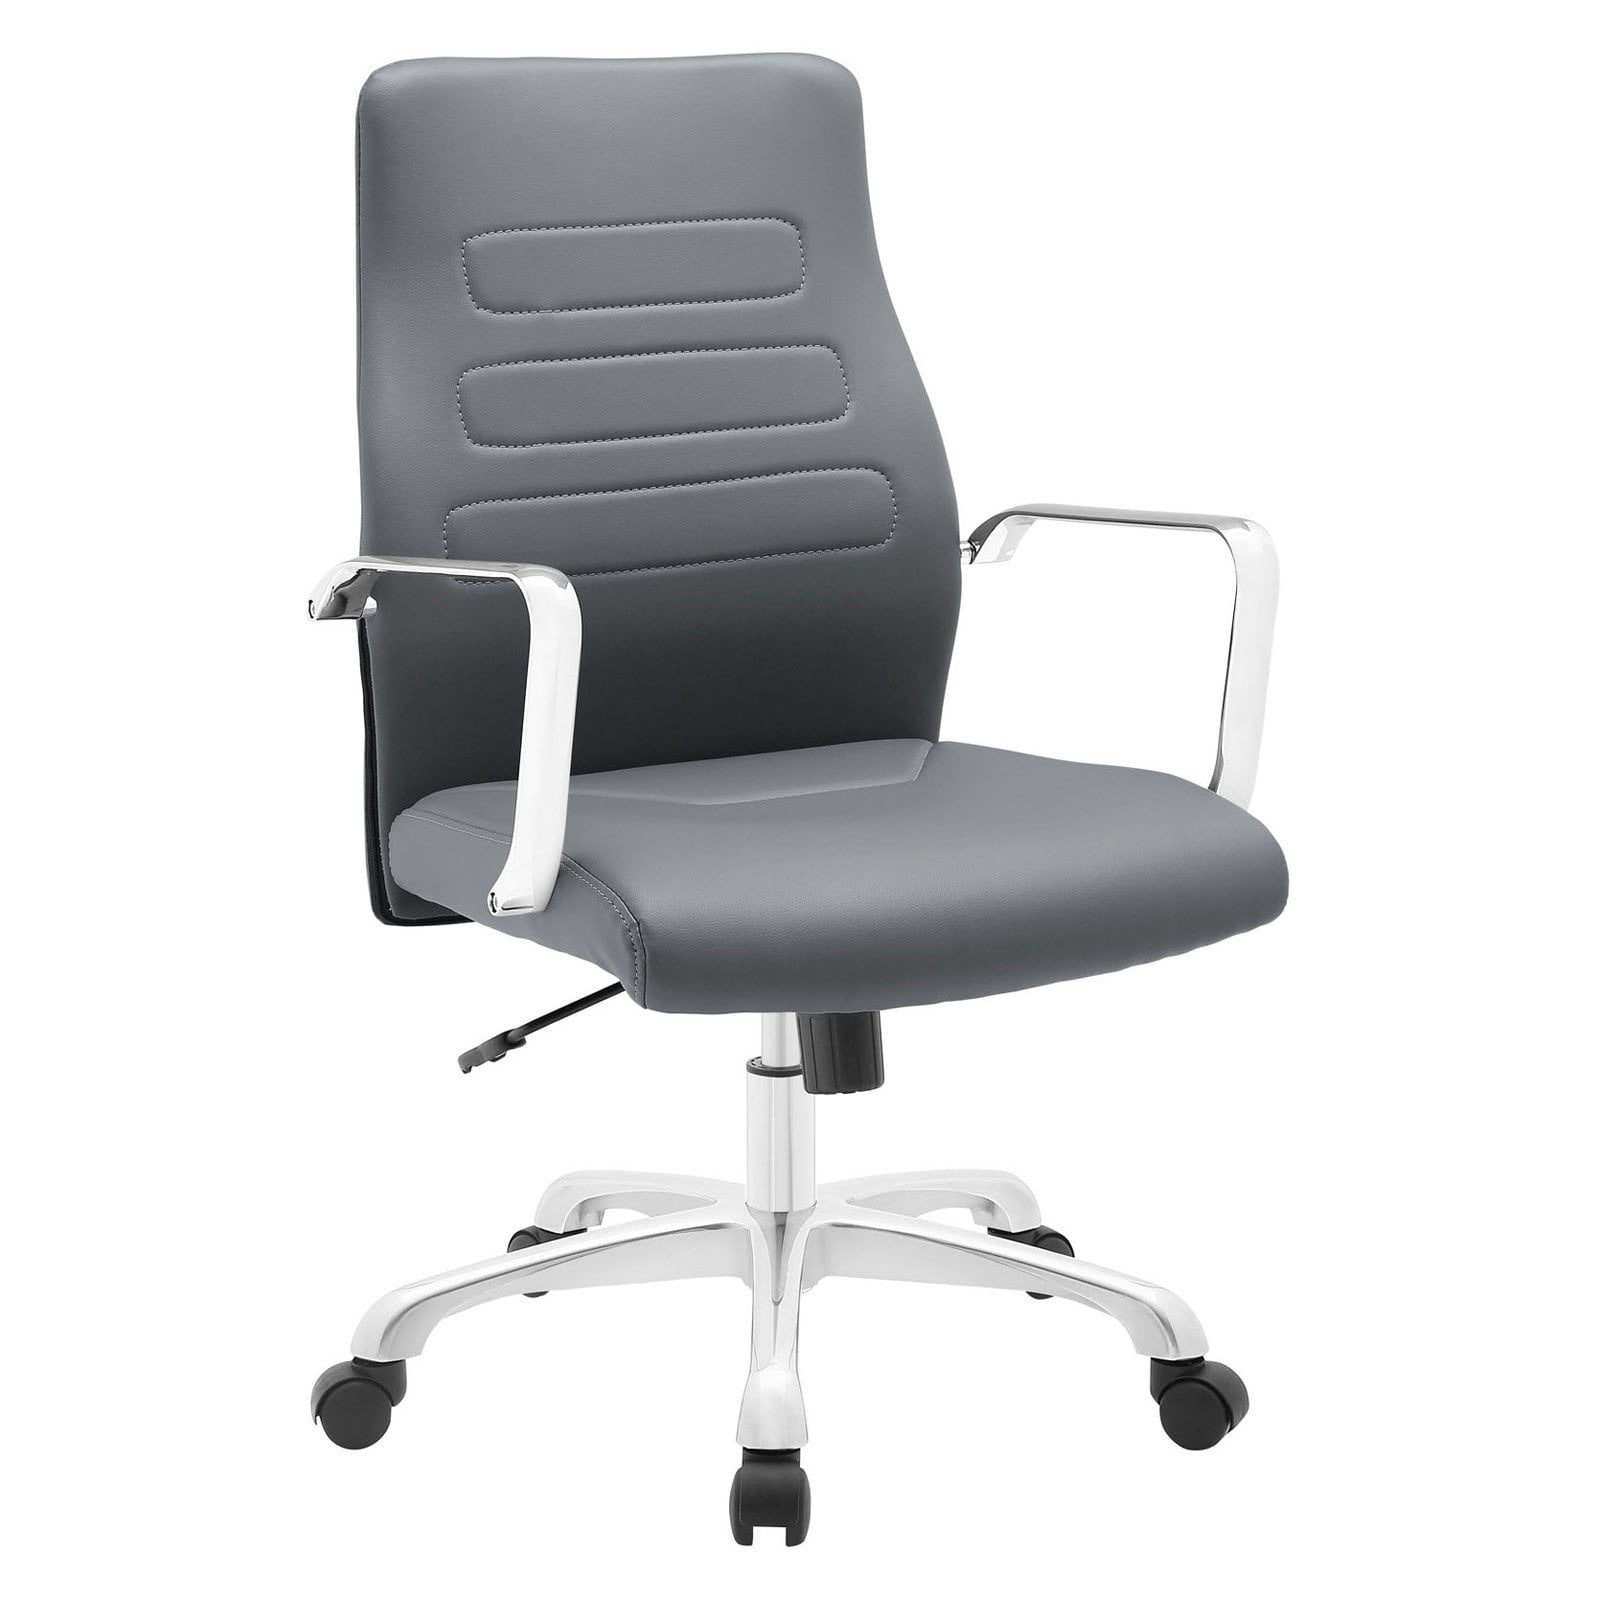 Modway Depict Mid Back Aluminum Office Chair, Multiple Colors - Walmart.com